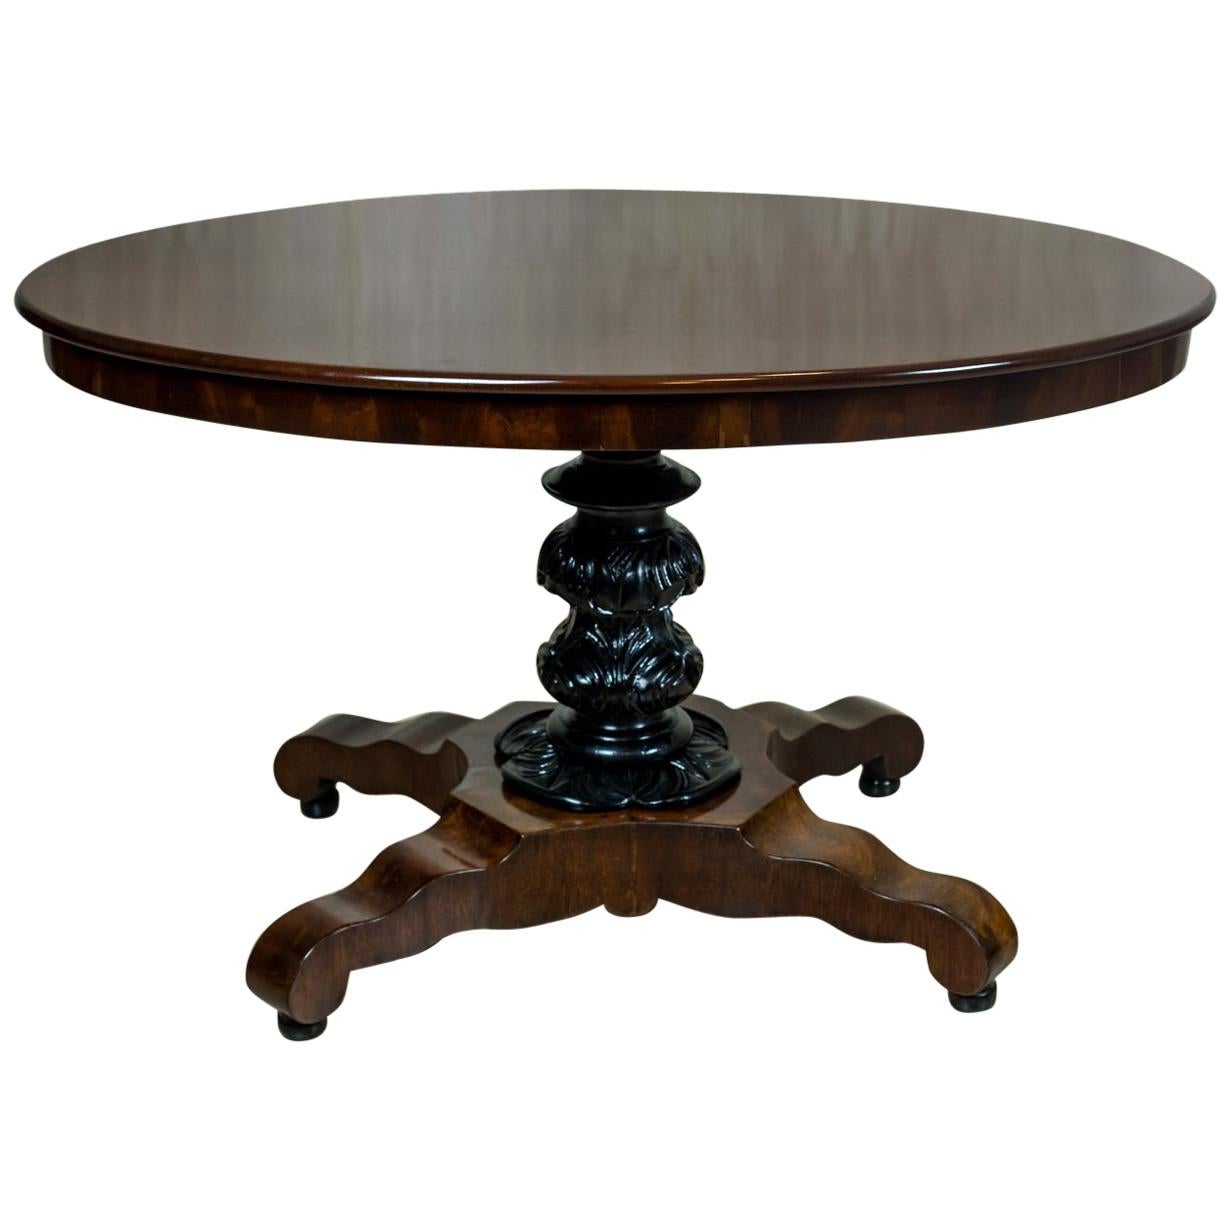 Mahogany, Oval Table, circa the 19th Century